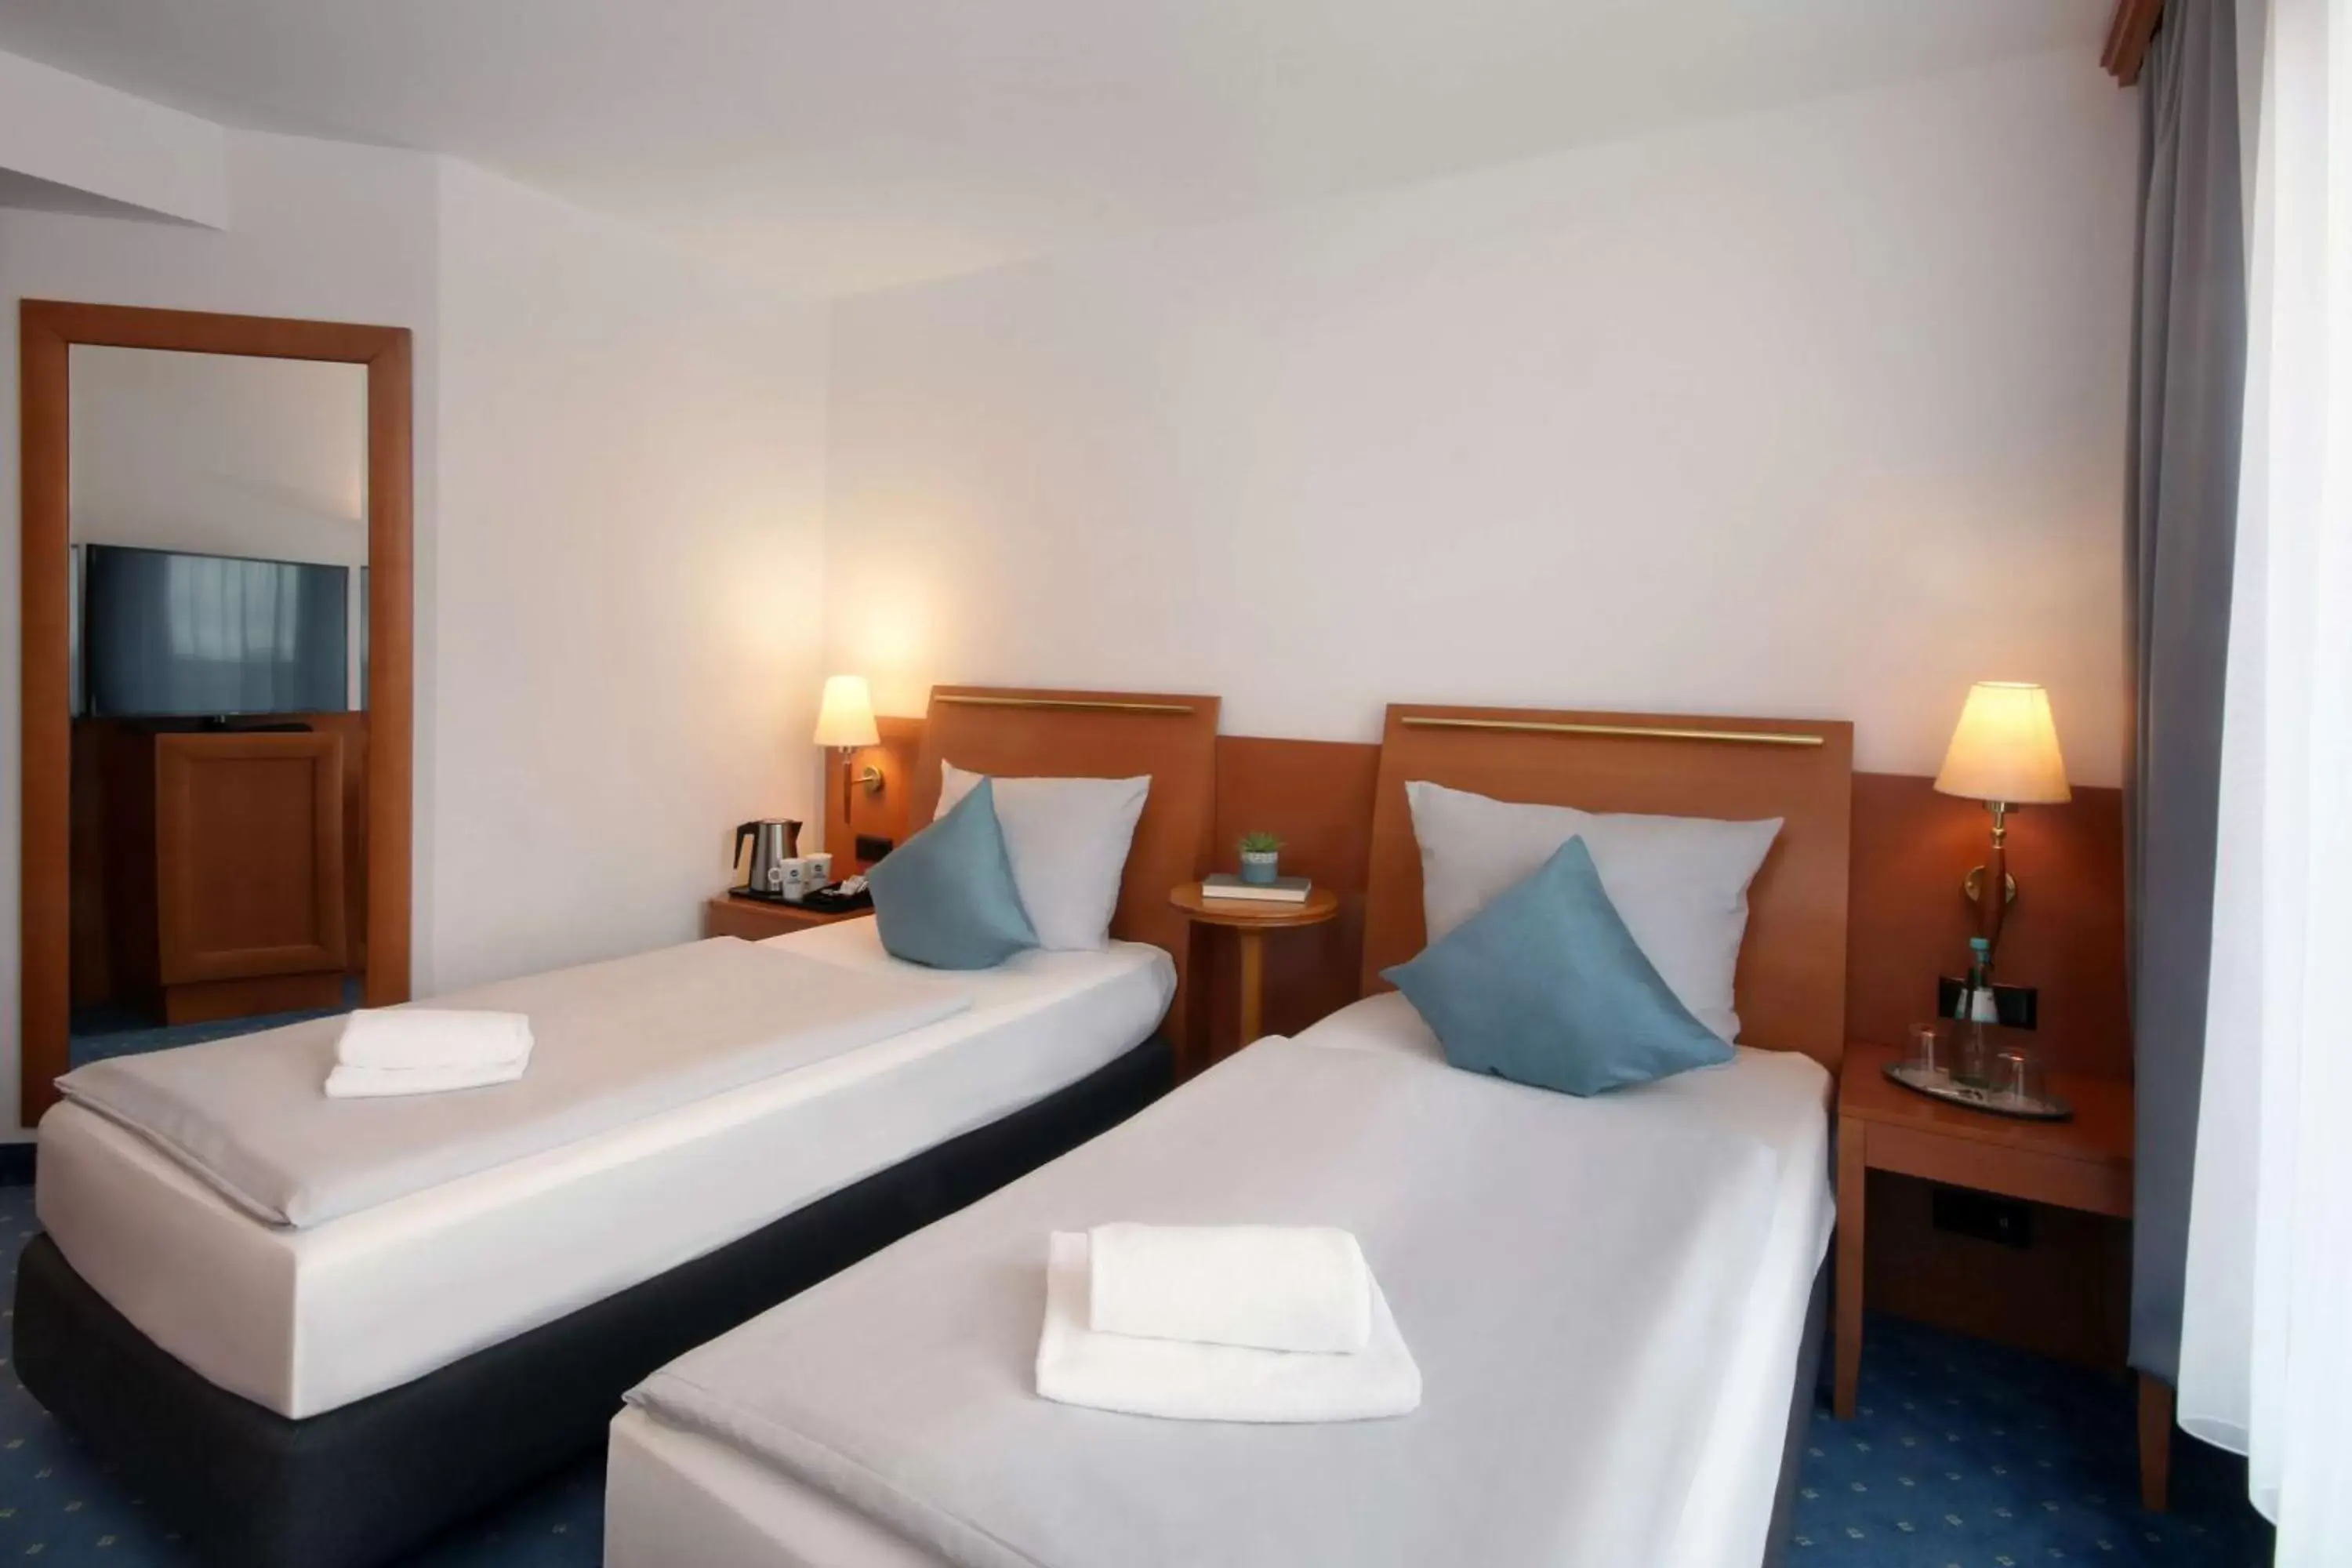 Bedroom, Bed in Best Western Hotel Halle-Merseburg